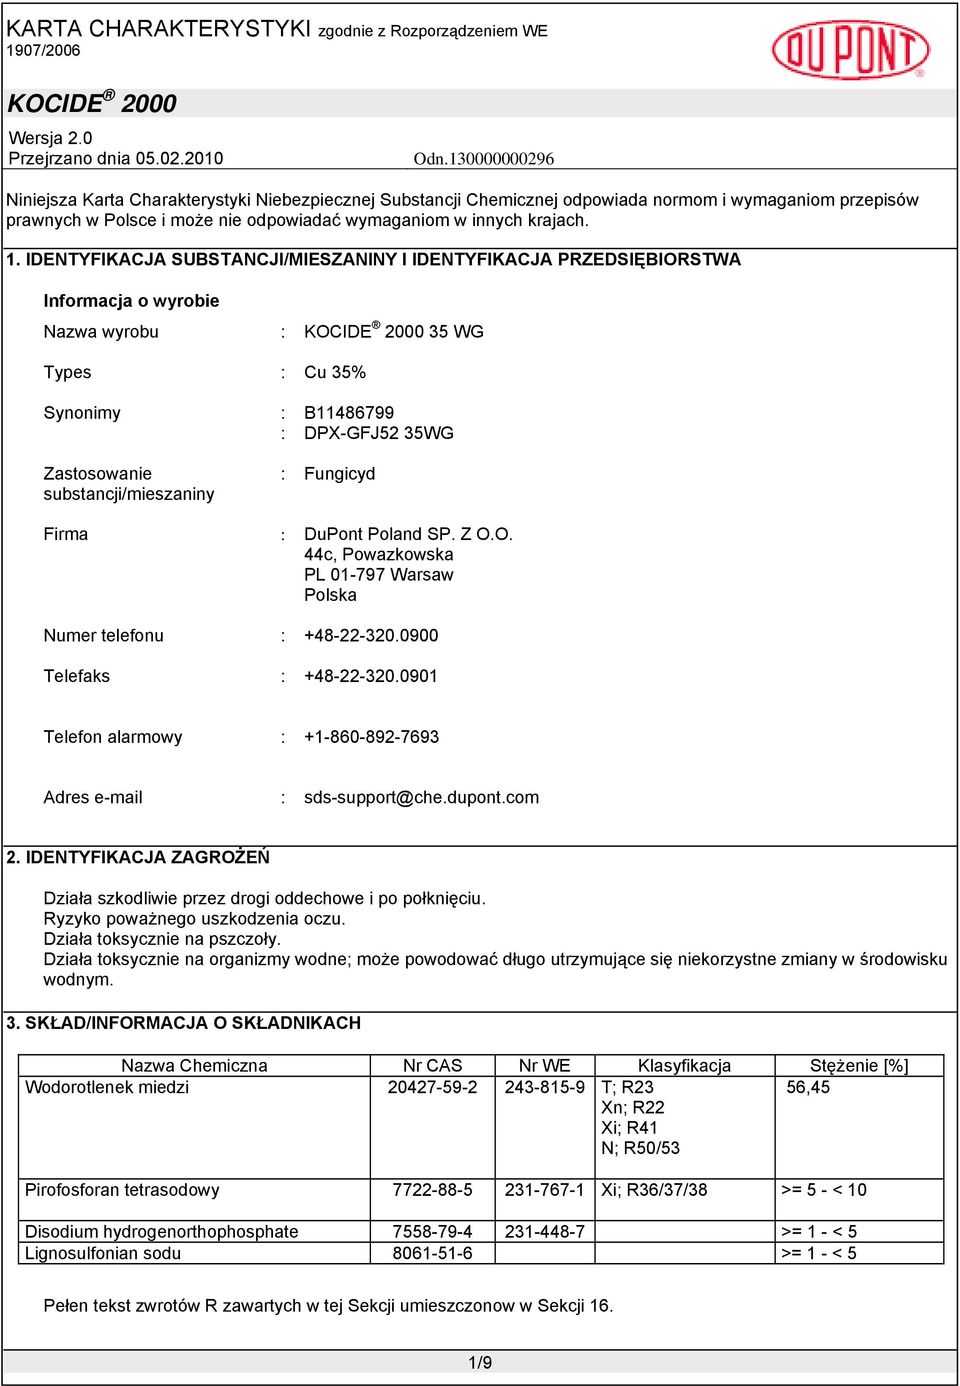 : Fungicyd Firma : DuPont Poland SP. Z O.O. 44c, Powazkowska PL 01-797 Warsaw Polska Numer telefonu : +48-22-320.0900 Telefaks : +48-22-320.